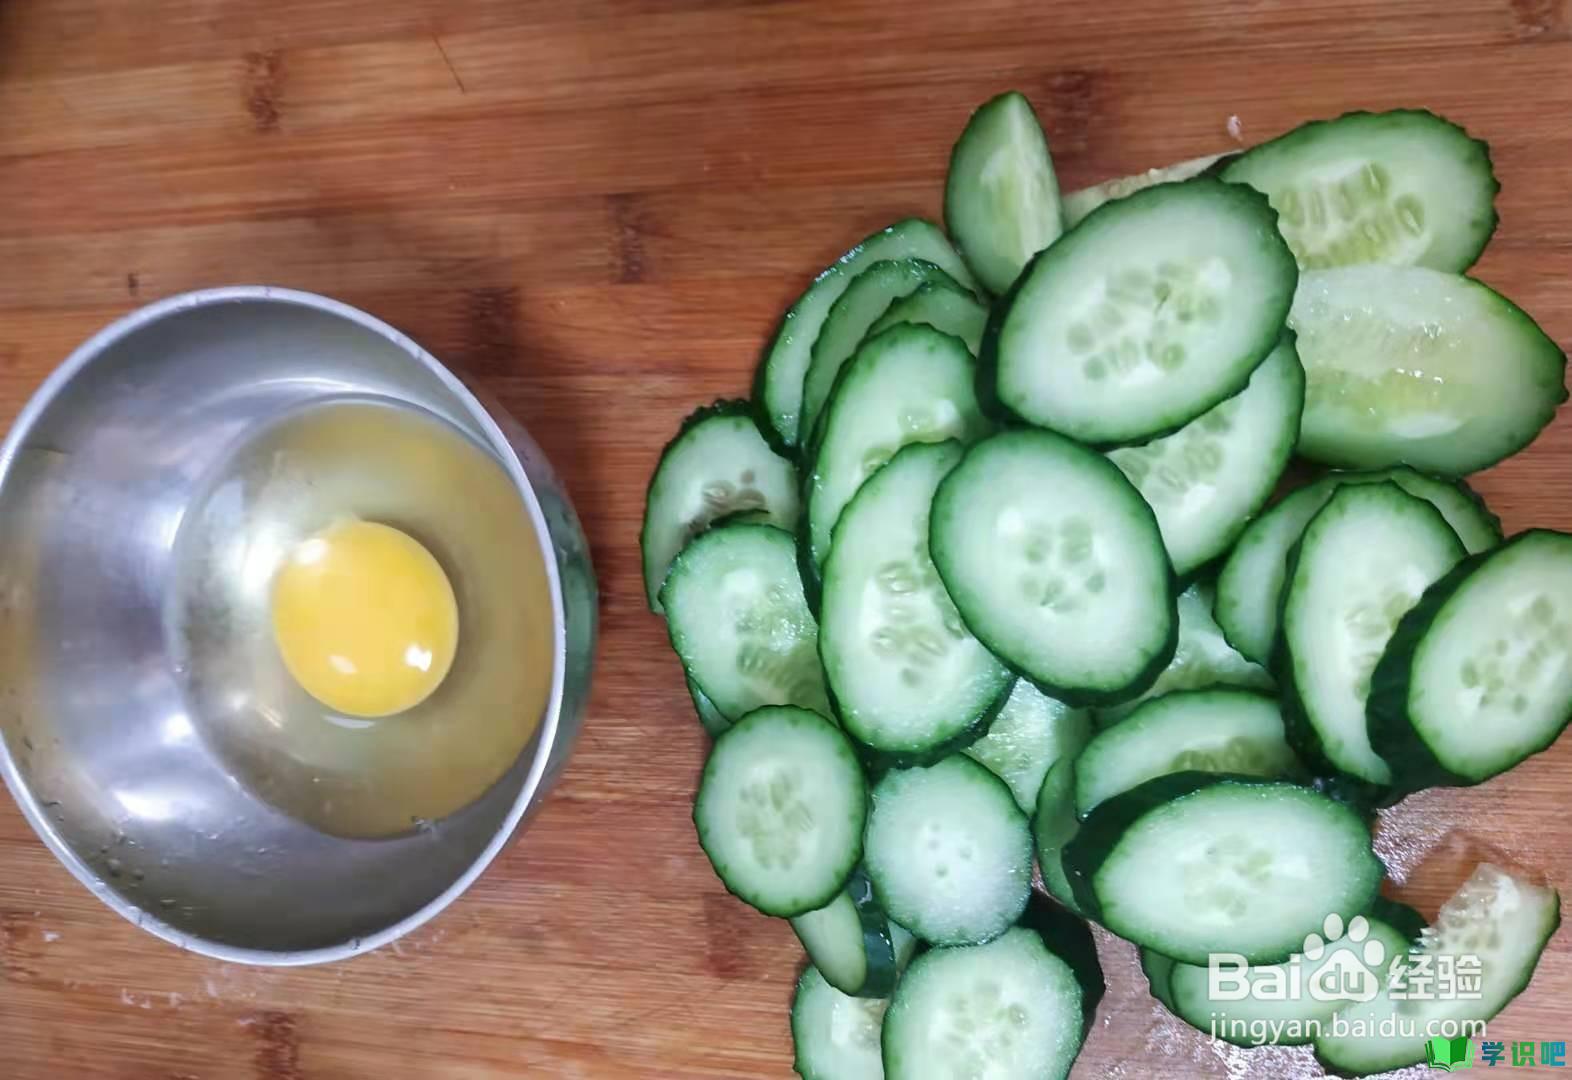 如何制作黄瓜炒鸡蛋？ 第2张